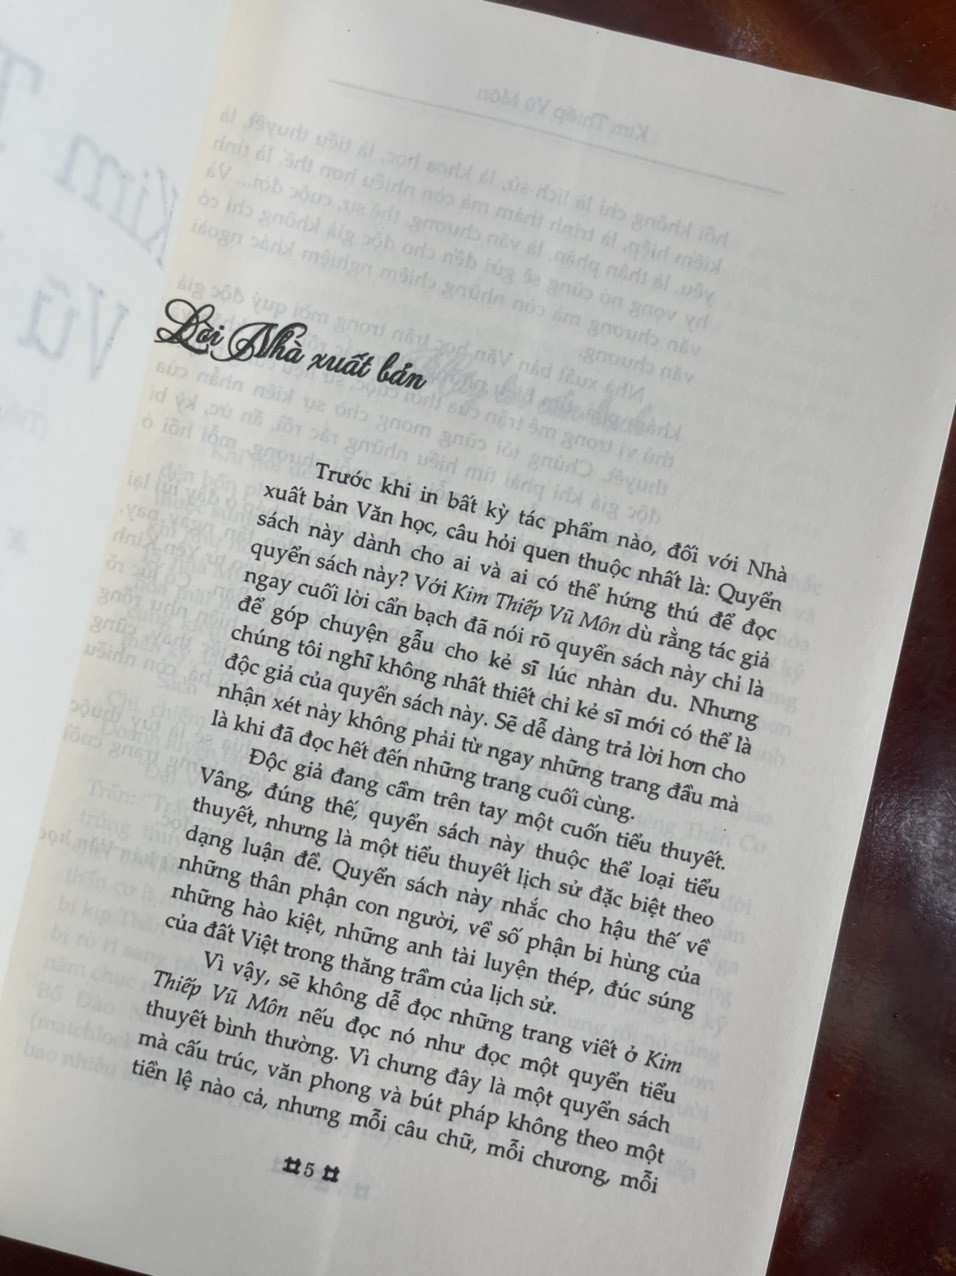 KHÔNG ĐẦU, KHÔNG CUỐI, KHÔNG BIẾT TẠI SAO – tuyển truyện ngắn báo Lao Động cuối tuần – NXB Văn học - Bìa mềm